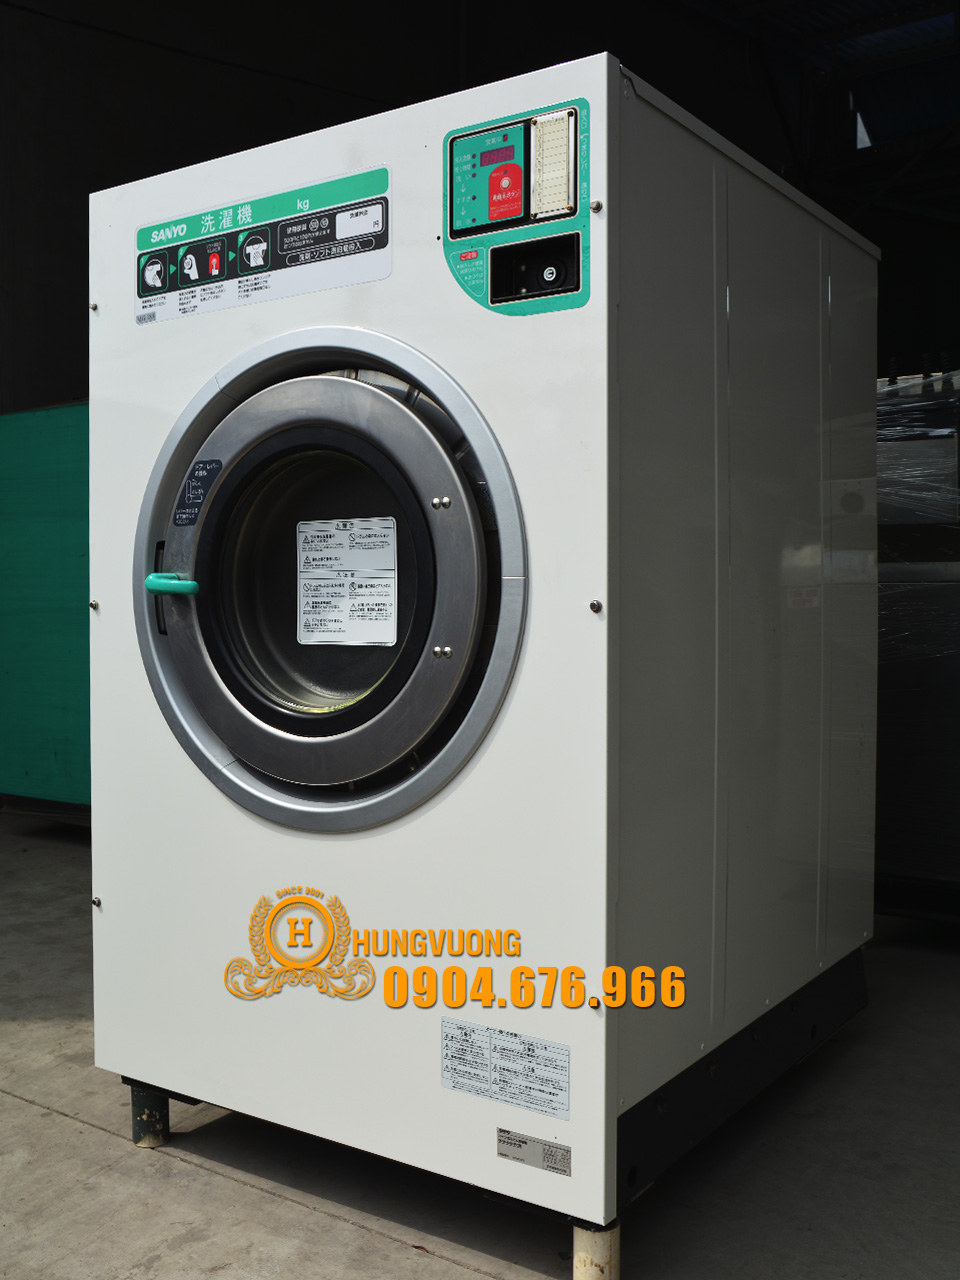 Mặt nghiêngmáy giặt công nghiệp SANYO SCW 5301FC, 30kg, chân chống rung, biến tần, Nhật Bản